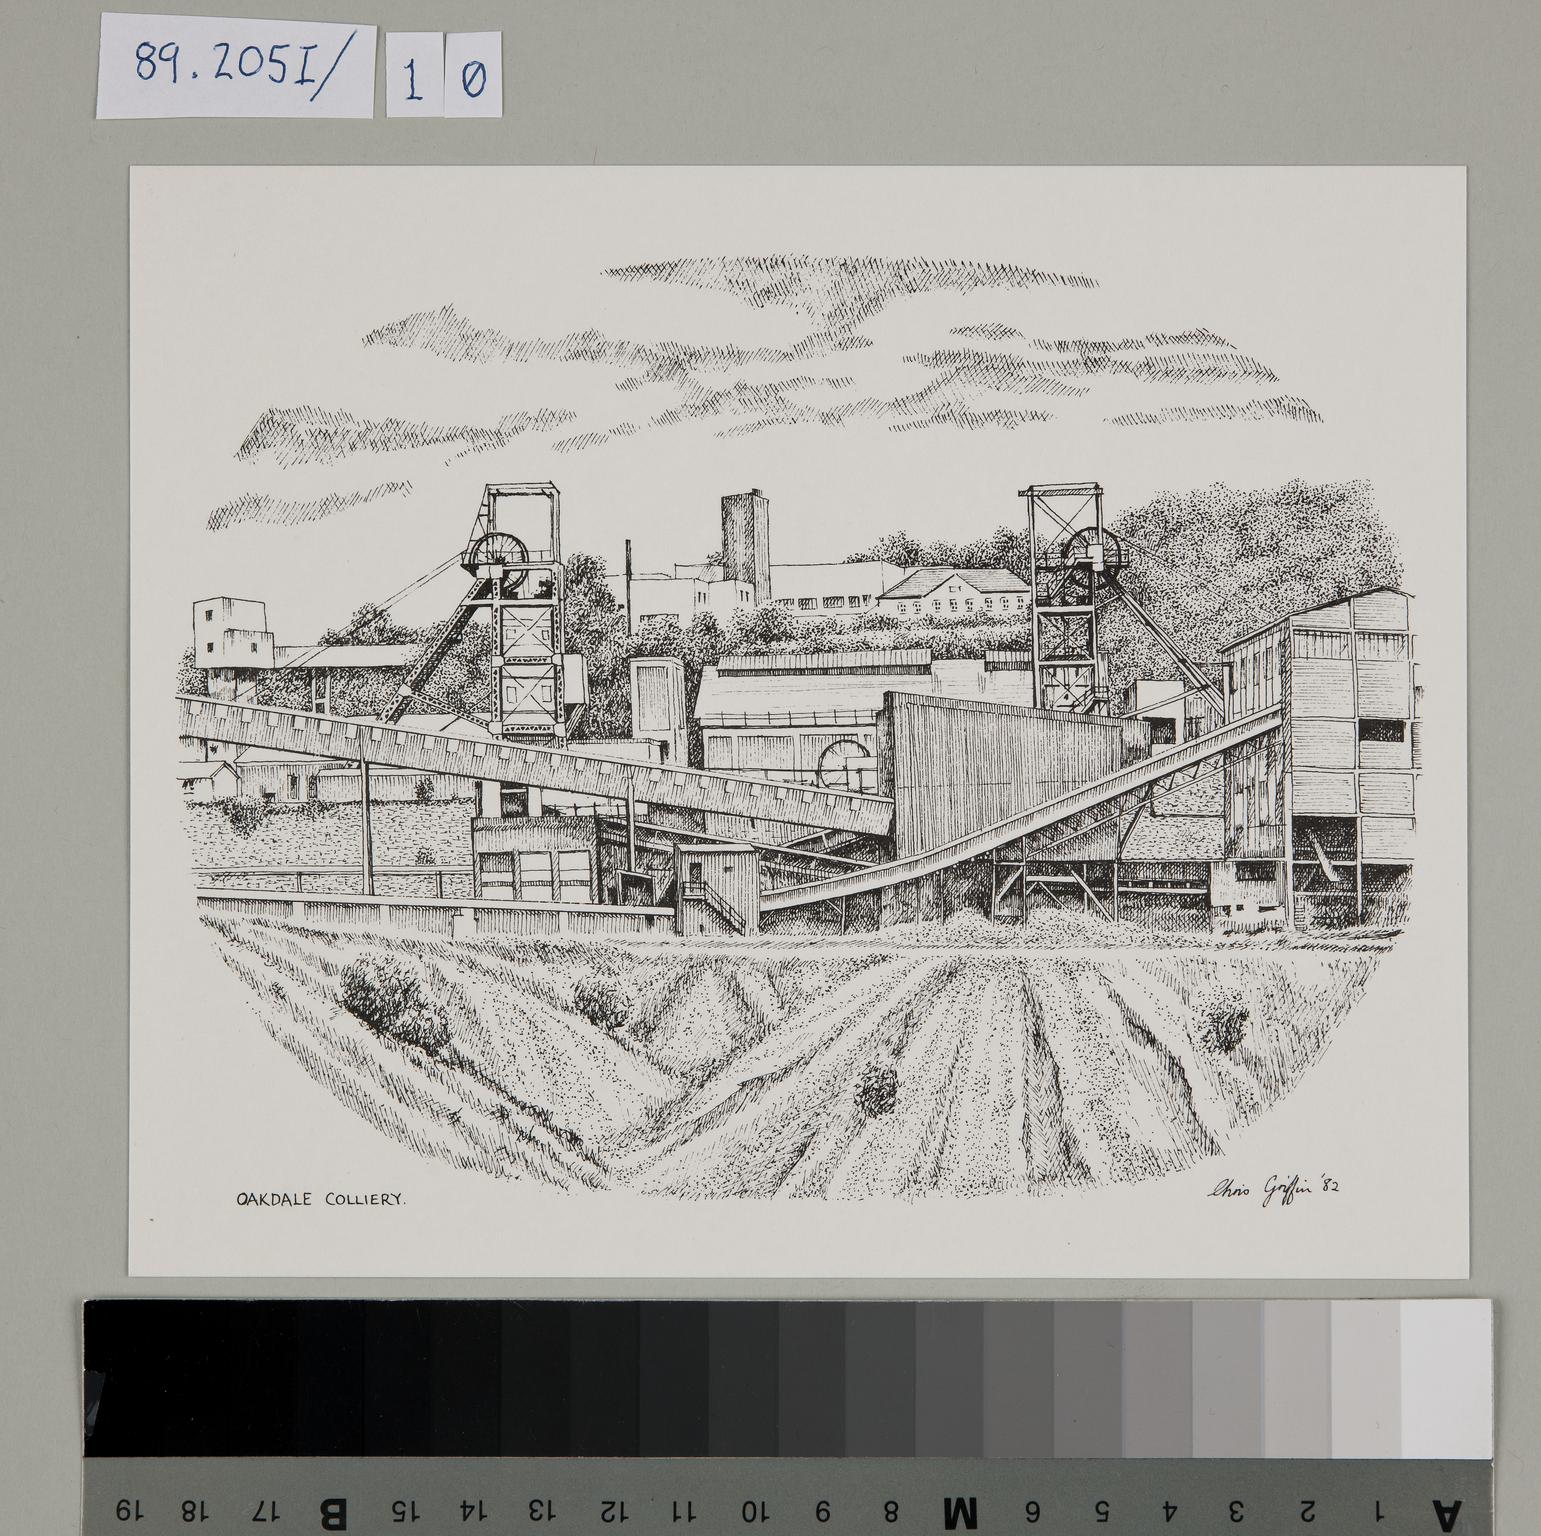 Oakdale Colliery (print)